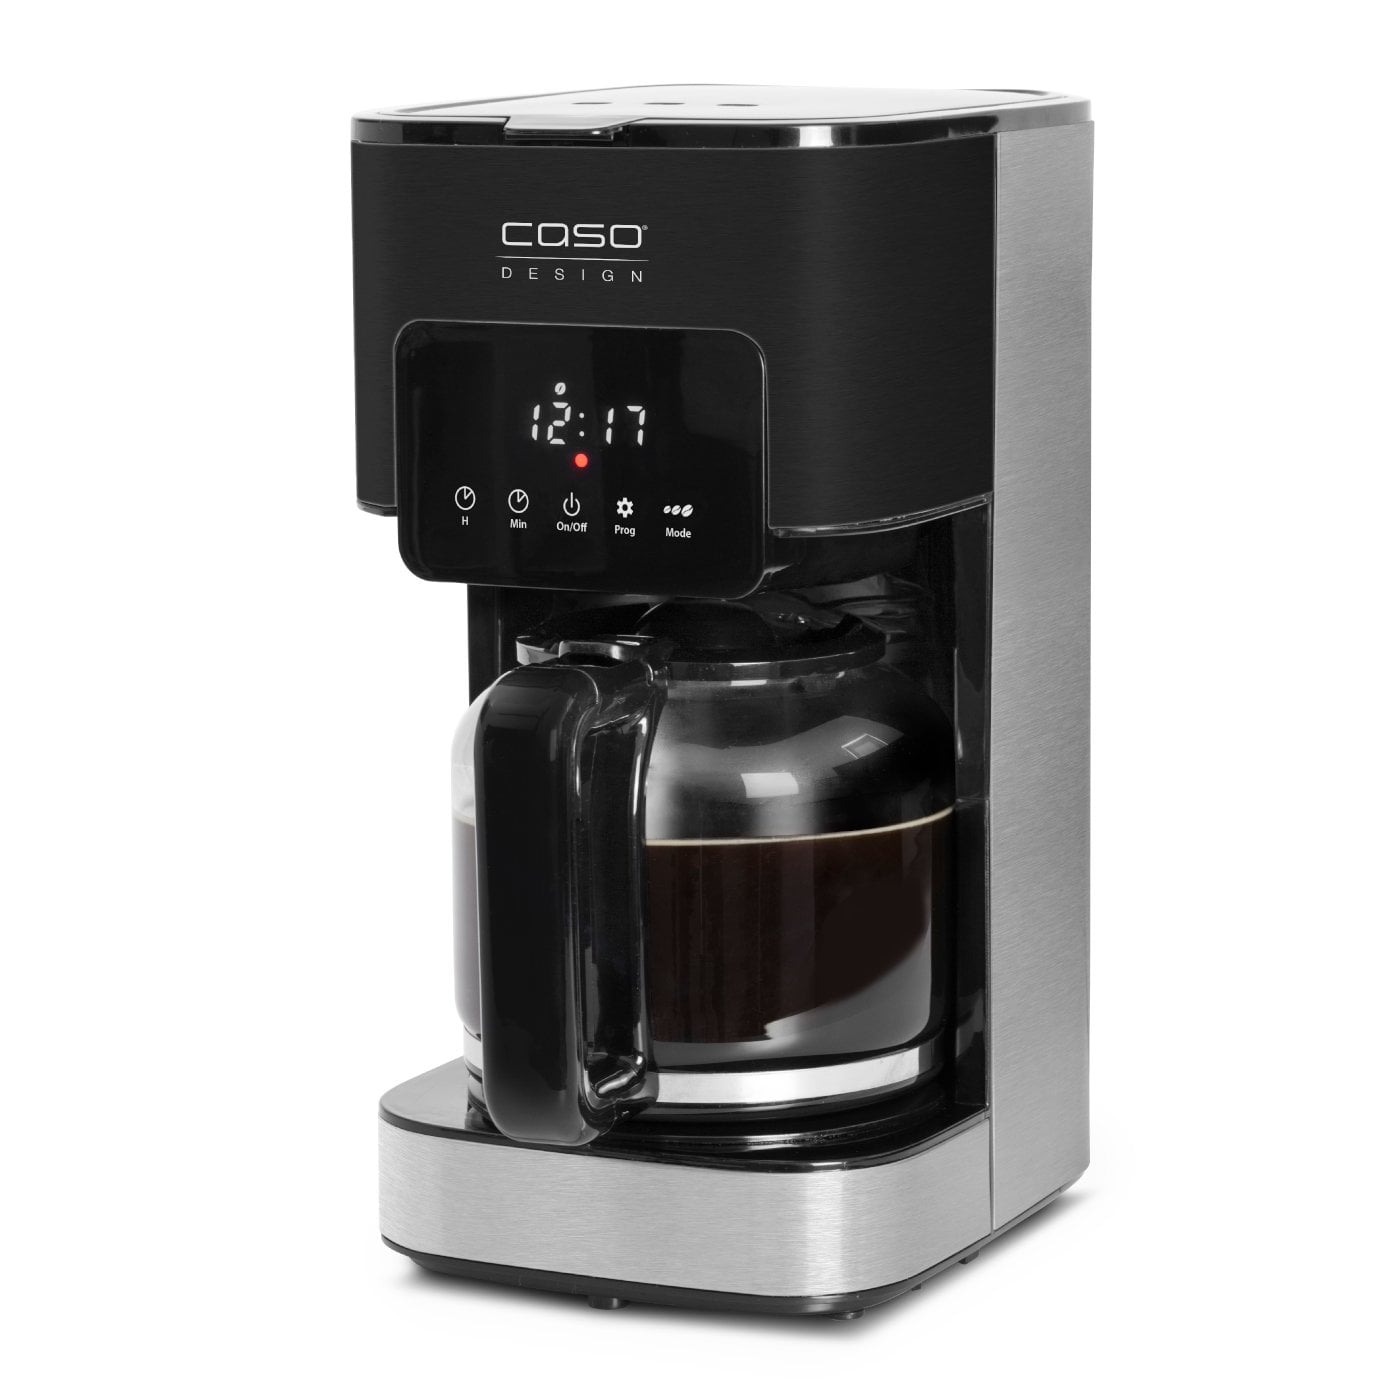 Caso Germany 900 leállítás, érintésvezérlés, 1,5 teljesítmény Taste Coffee Style csésze, kávéfőző, l/12 automatikus funkció, cseppmentesítő időzítő, W, & programozható fekete-ezüst